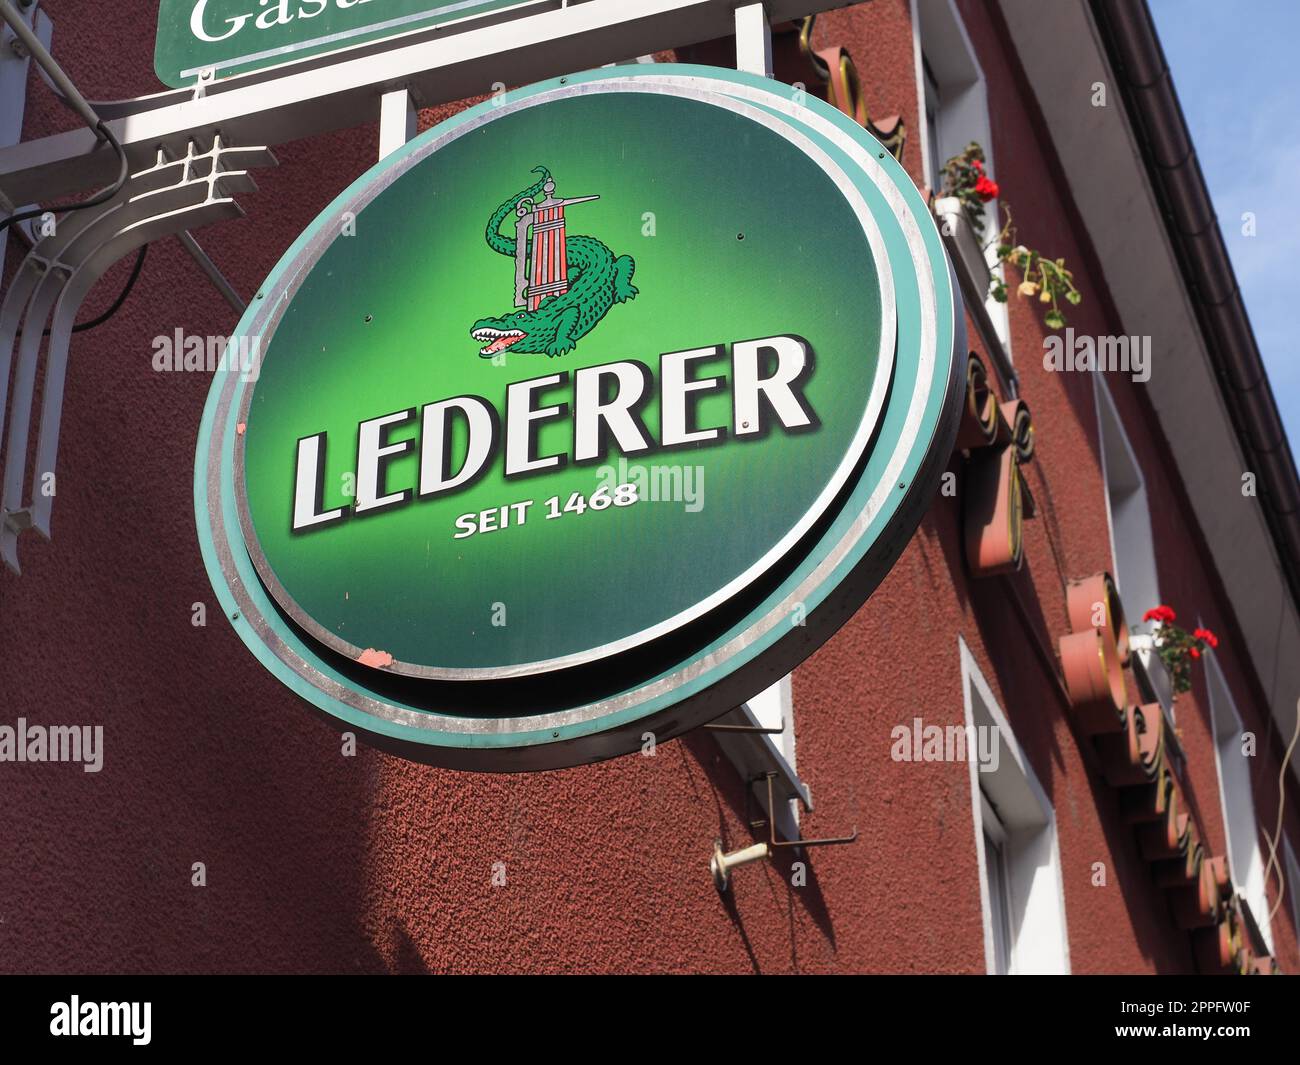 Lederer beer sign in Nuernberg Stock Photo